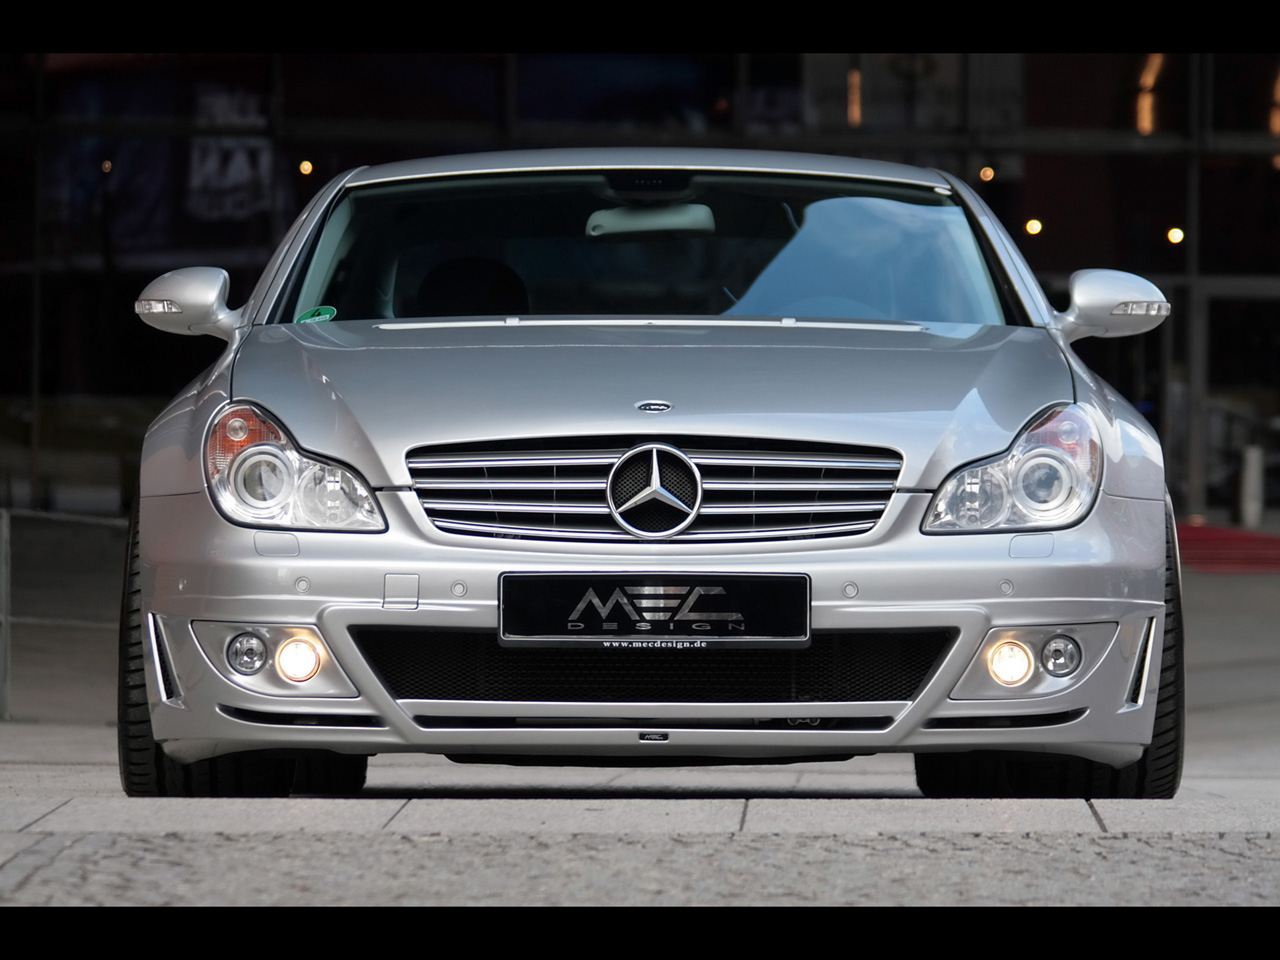 2009 MEC Design Mercedes-Benz CLS - Front - 1280x960 - Wallpaper